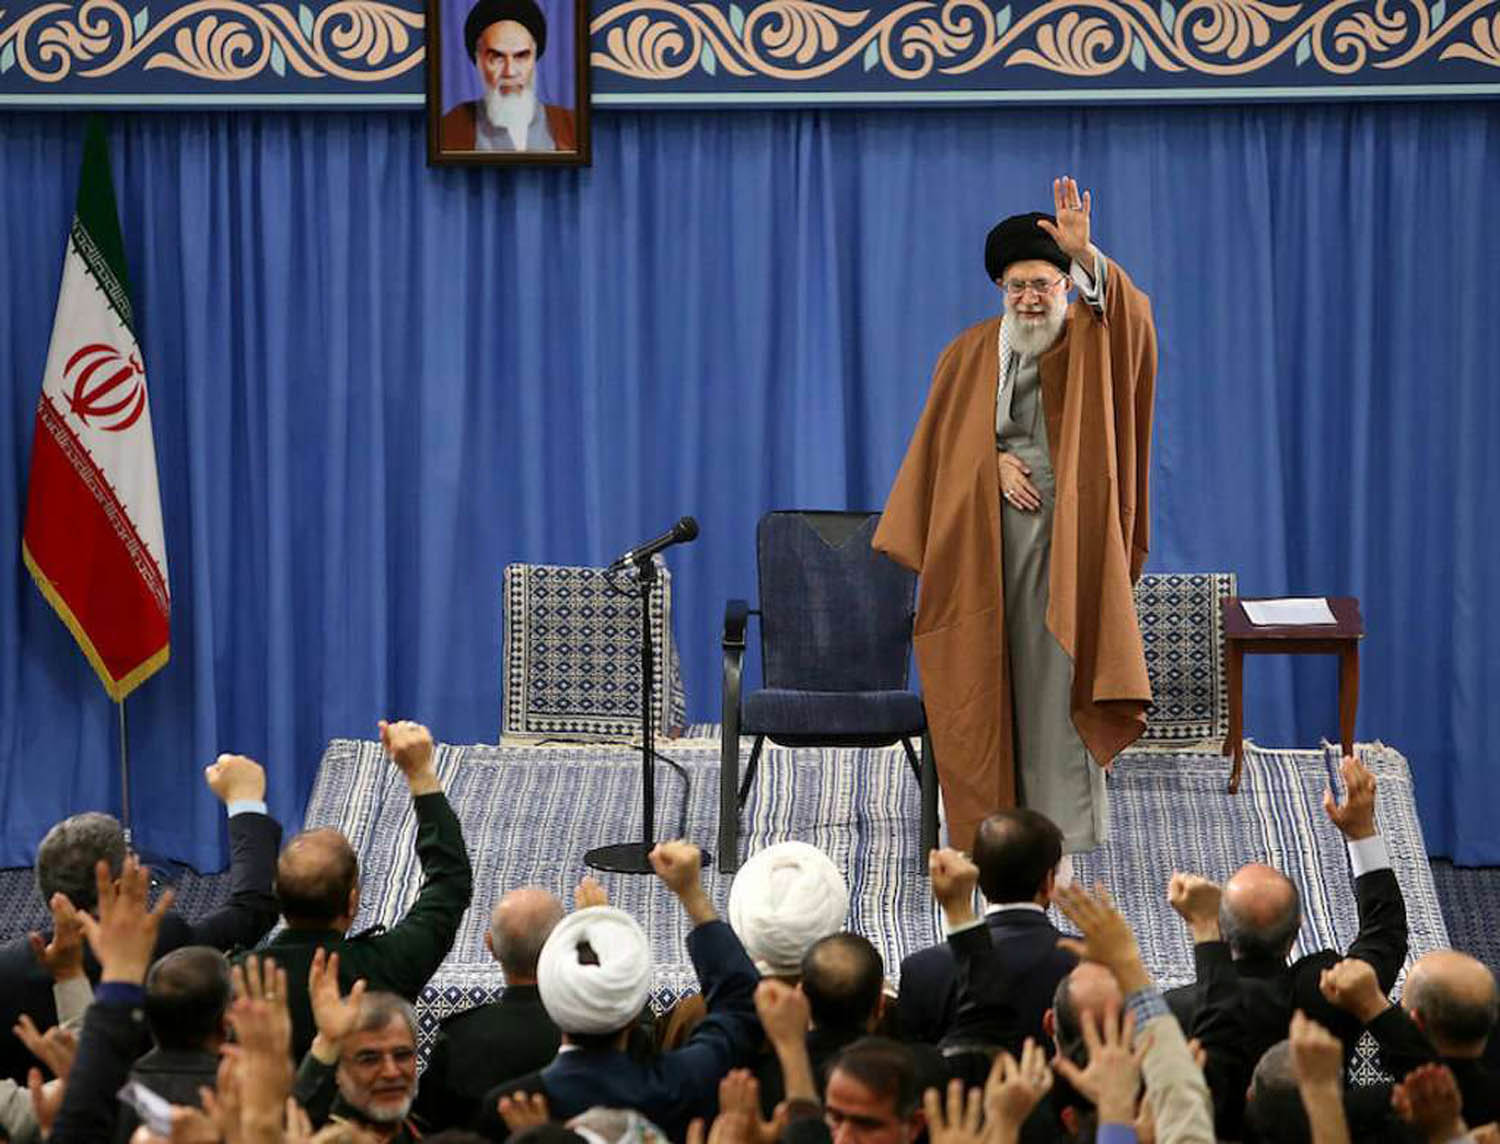 المرشد الأعلى علي خامنئي يلوح بيده لإيرانيين في ذكرى الثورة